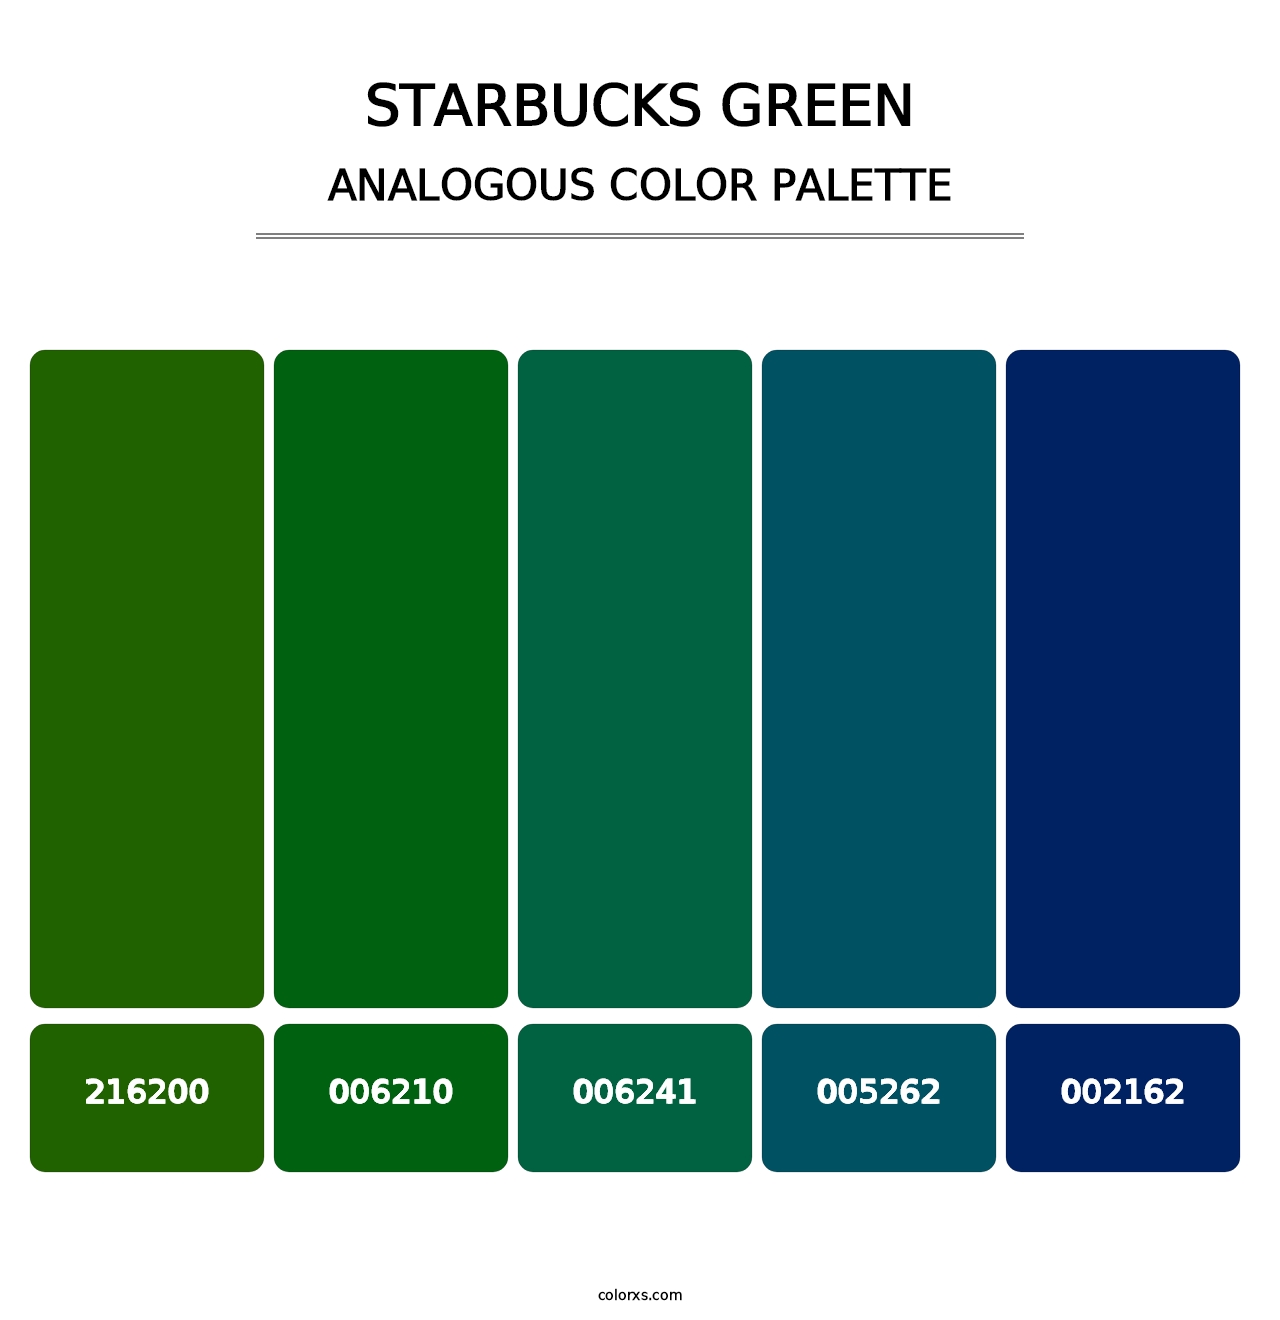 Starbucks Green - Analogous Color Palette